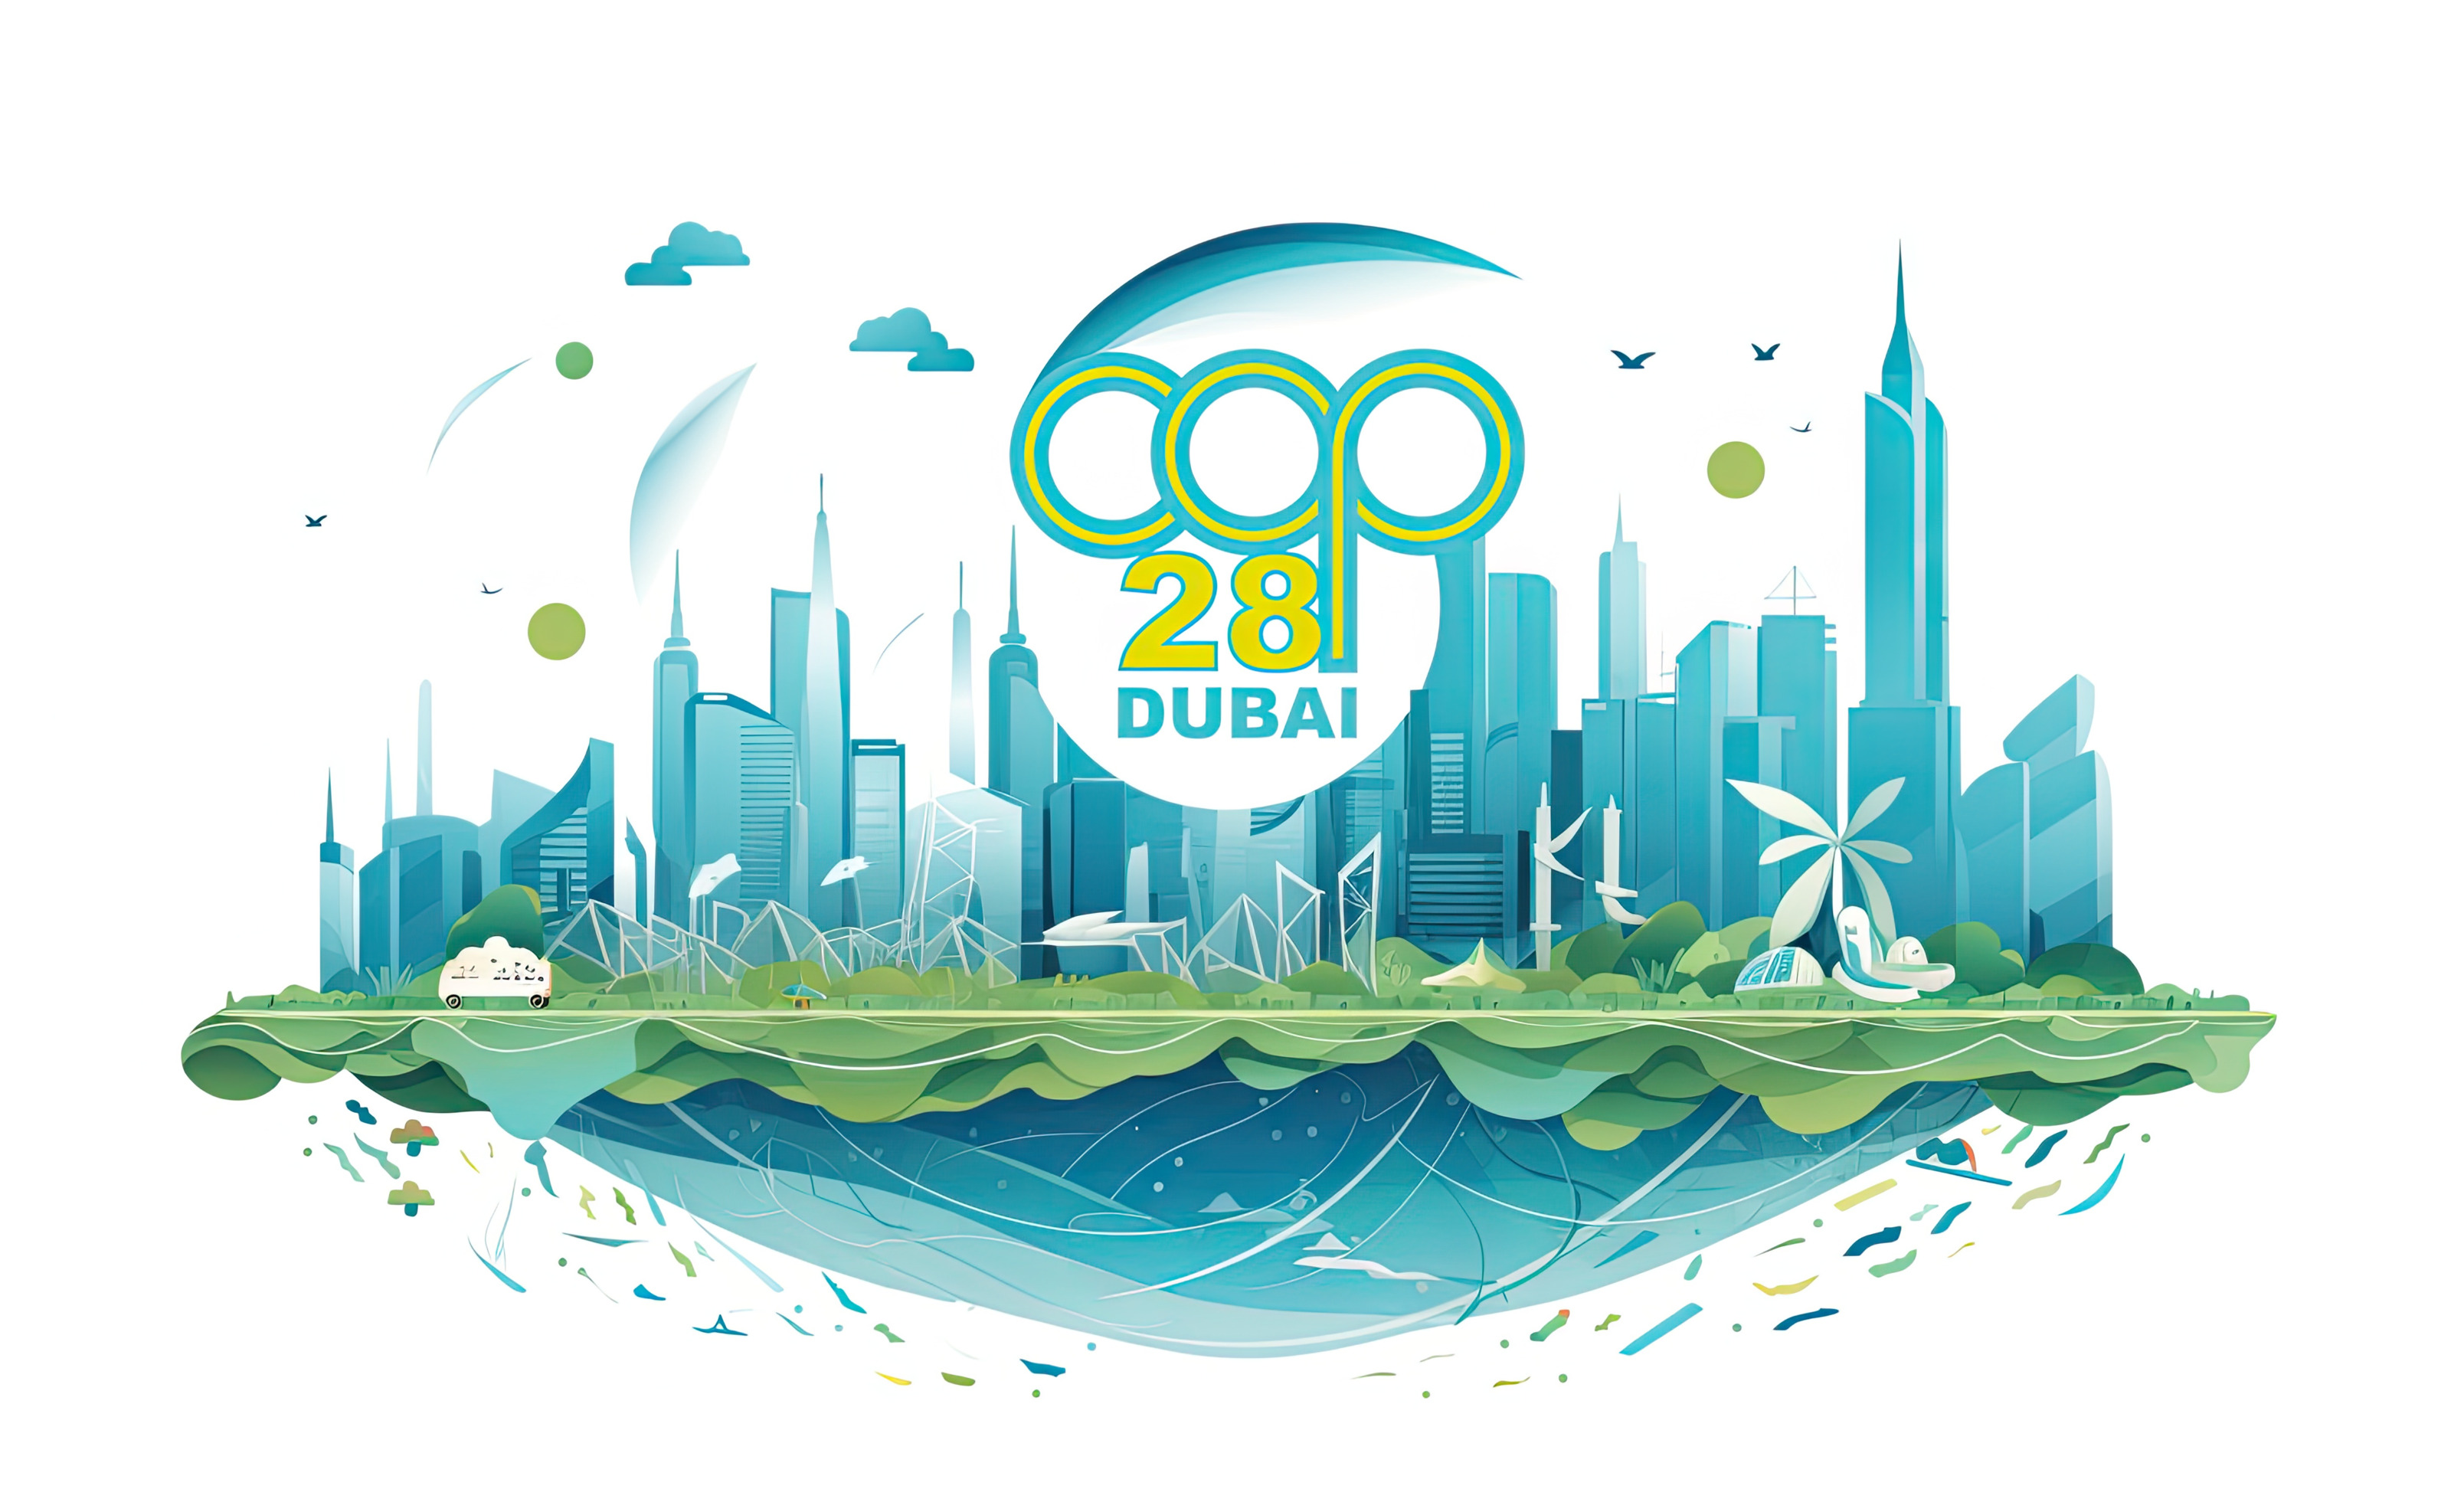 KI-generierte Illustration in türkisblau gehalten auf weißem Hintergrund: Stadtlandschaft mit Hochhäusern darüber Schriftzug COP 28 Dubai